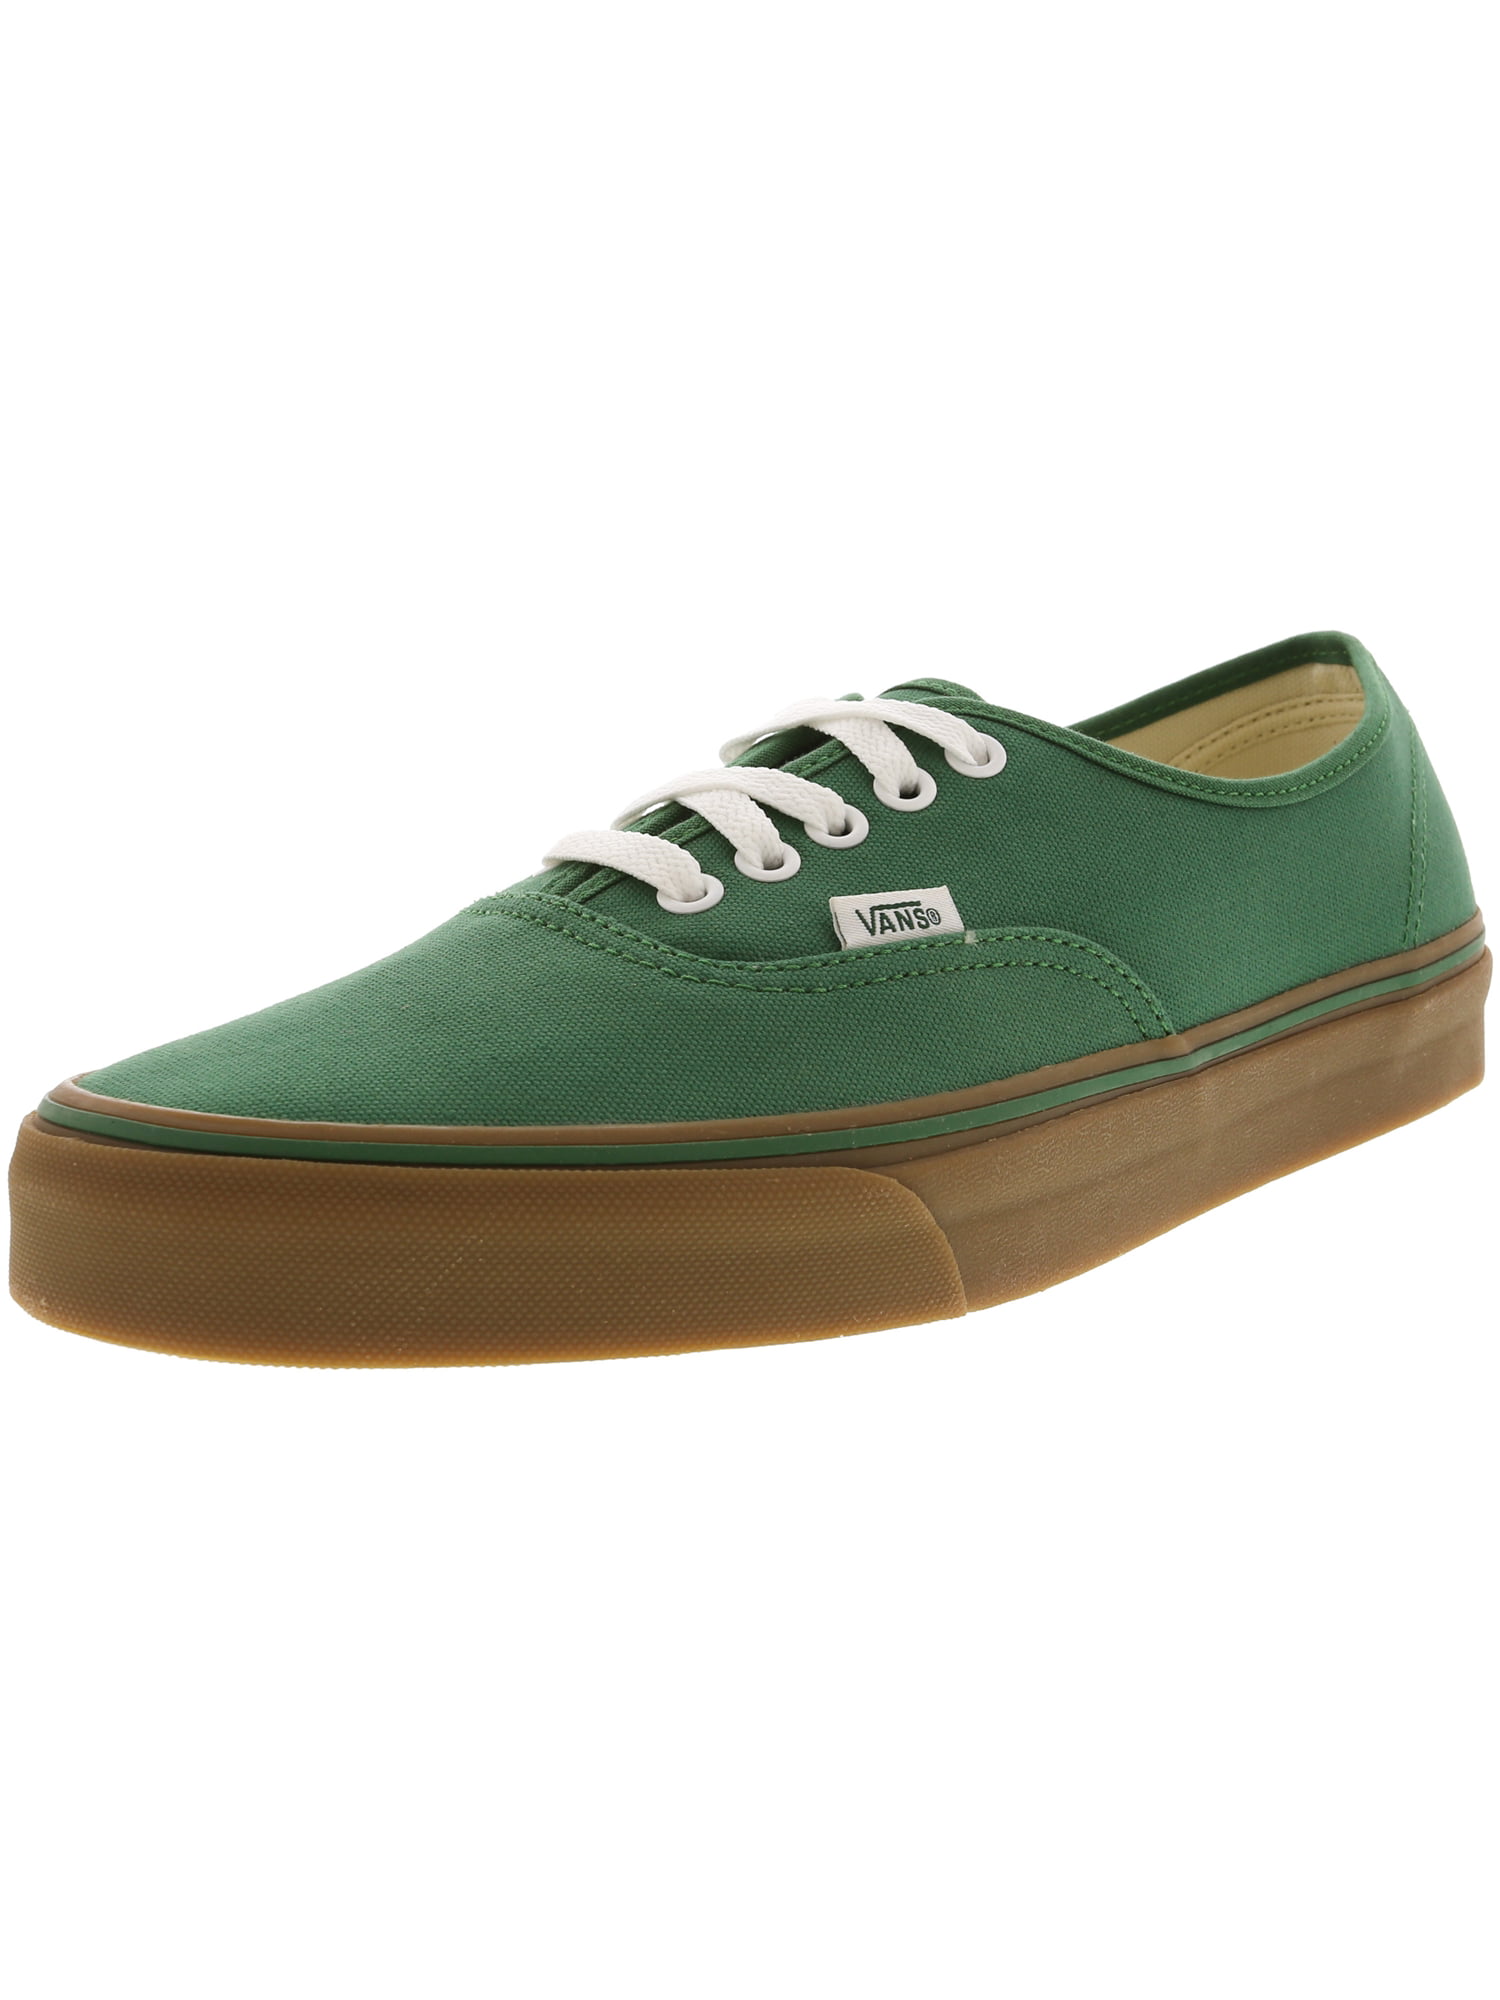 vans green gum sole